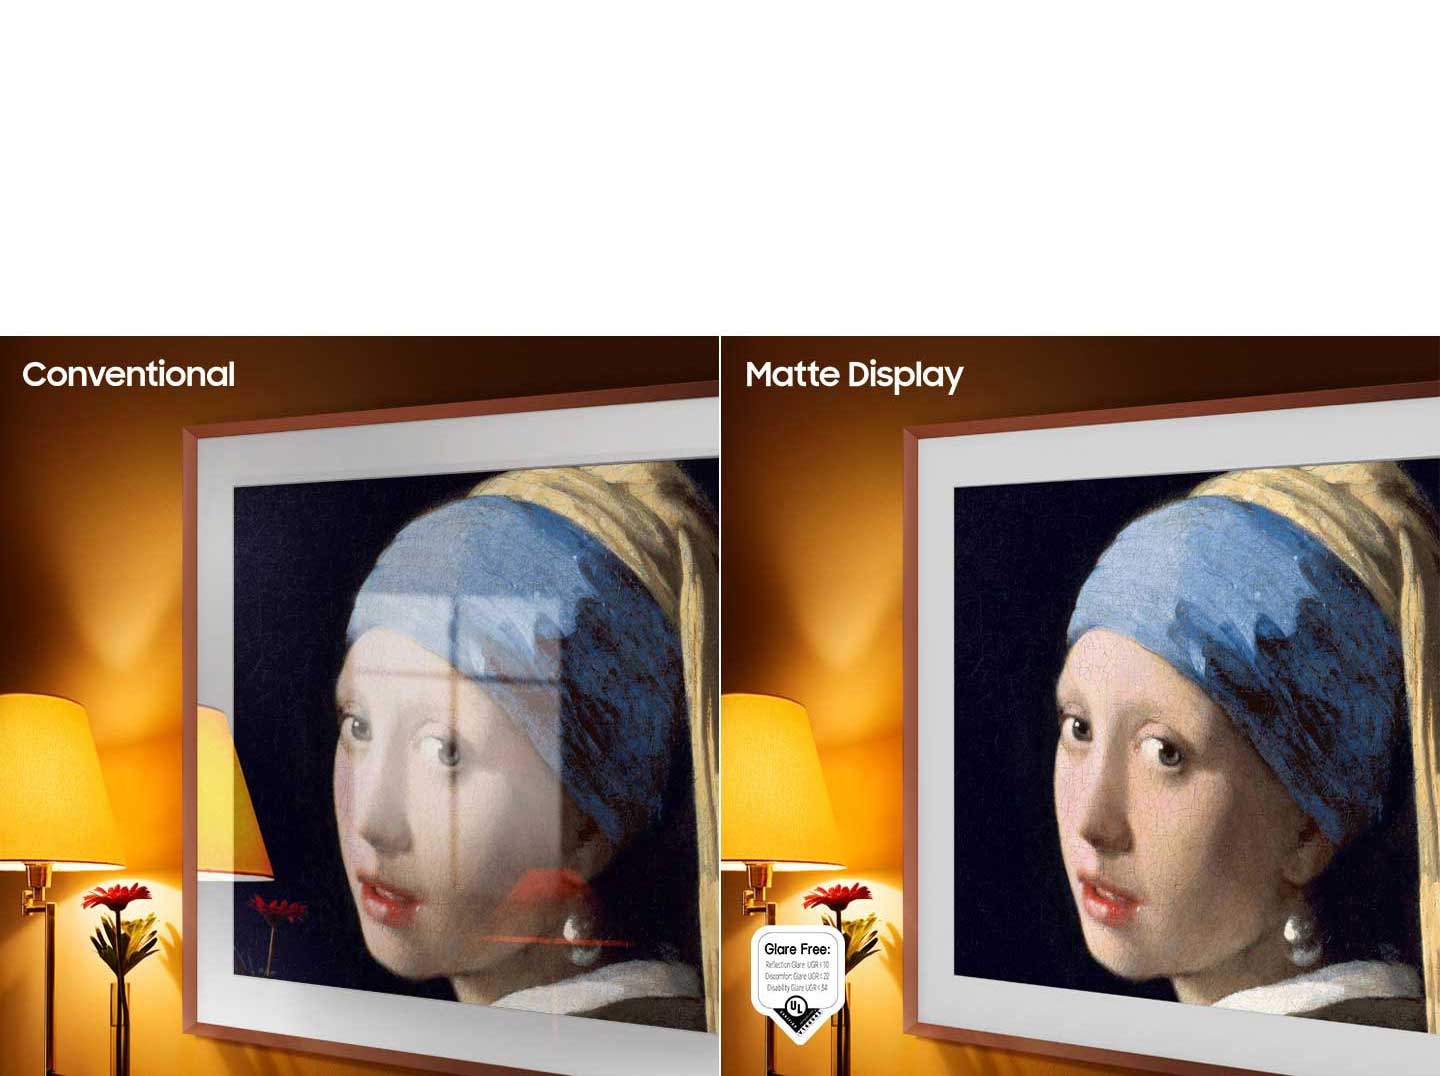 تظهر كلمة 'Conventional' (تقليدي) على الجانب الأيسر من الشاشة الذي يعرض تلفزيون The Frame أثناء عرض عمل فني مليء بالانعكاسات. وتظهر عبارة 'Matte Display' (شاشة غير لامعة) على الجانب الأيمن الذي يعرض تلفزيون The Frame يُظهِر نفس اللوحة بلا وهج، ويظهر شعار الاعتماد الخاص بالخلو من الوهج على الجانب الأيسر السفلي.